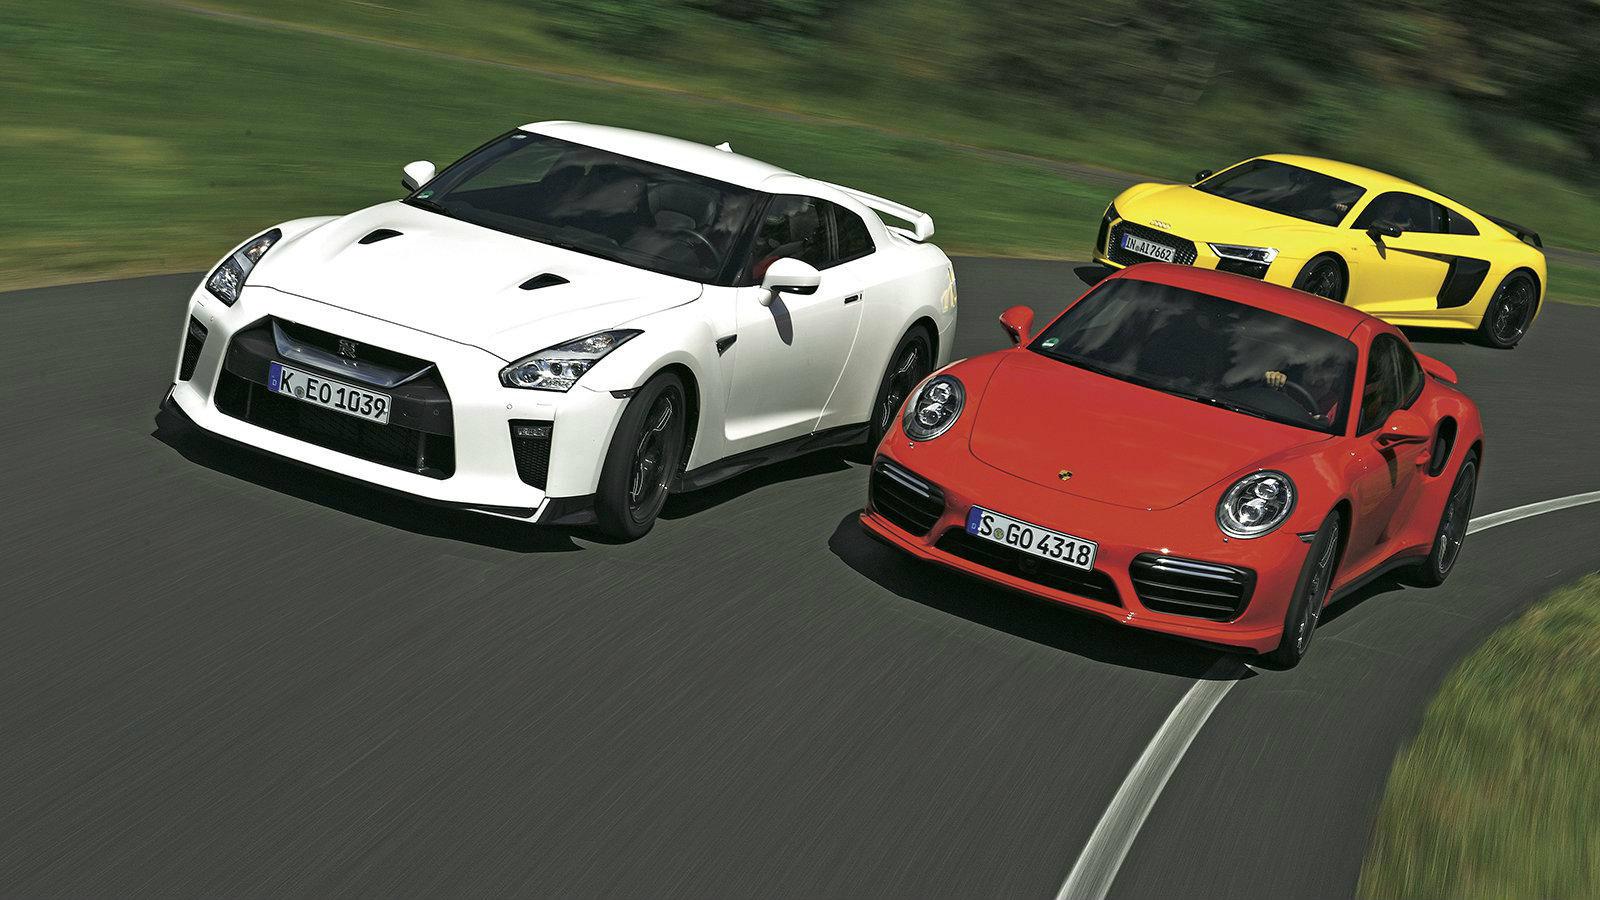 Δύο κορυφαίες Γερμανικές προτάσεις, «δέχονται» την πρόκληση του Nissan GT-R Track Edition για μερικούς γρήγορους γύρους στην πίστα. 